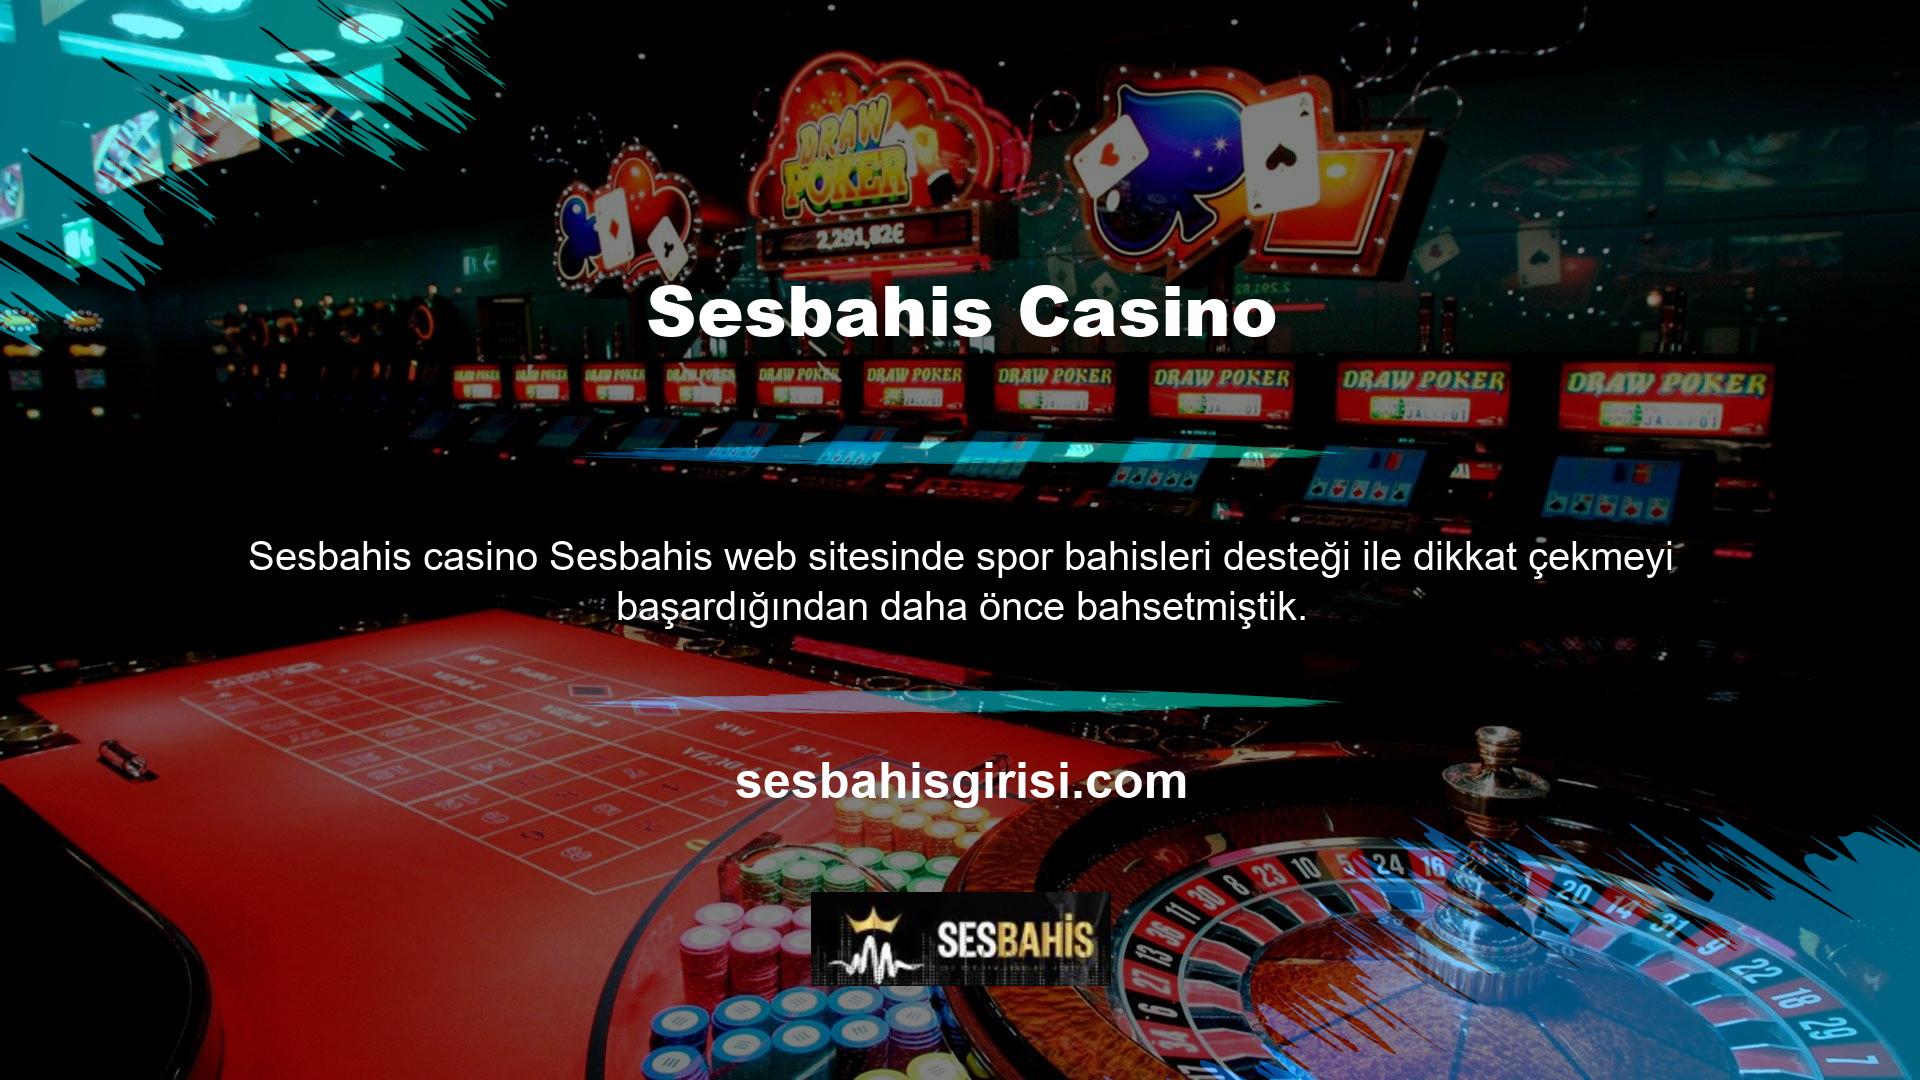 Casino oyunlarının kökenleri eski casino günlerine dayanmaktadır ve eğlence nedenleriyle giderek daha popüler hale gelmektedir